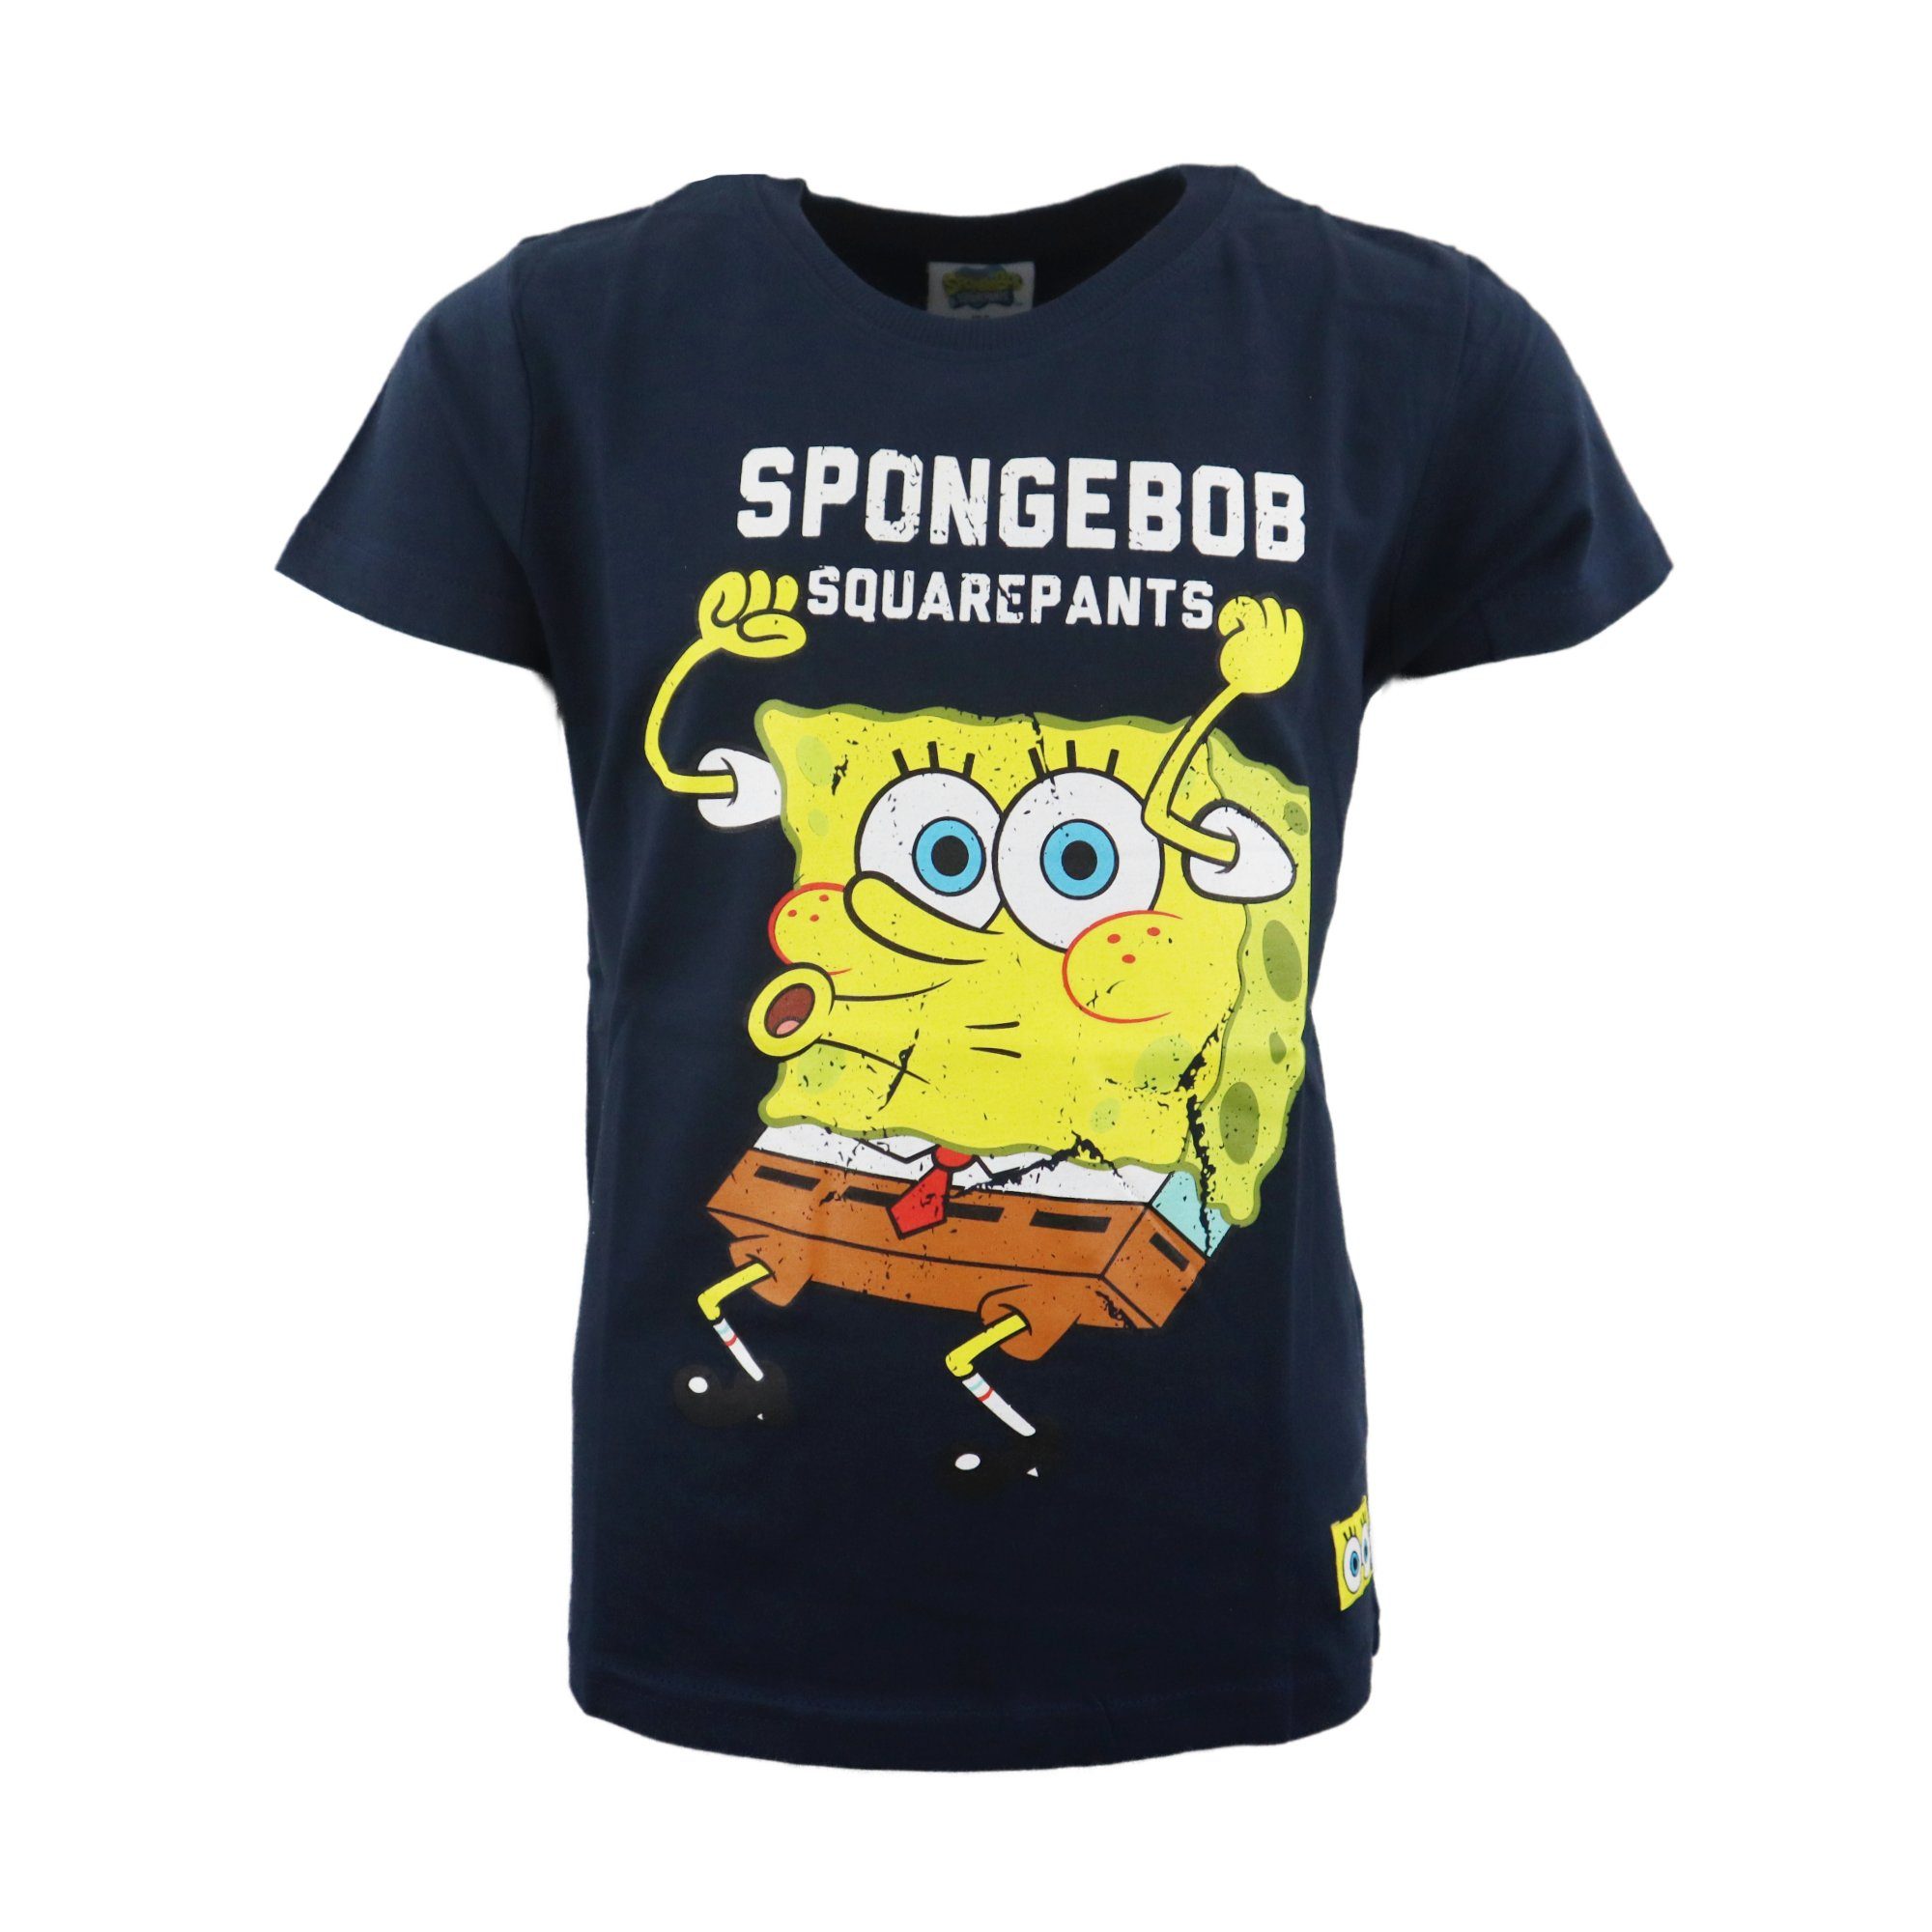 Spongebob Schwammkopf Print-Shirt Spong Bob Schwammkopf Jungen Kinder Jugend T-Shirt Gr. 134 bis 164, 100% Baumwolle Schwarz